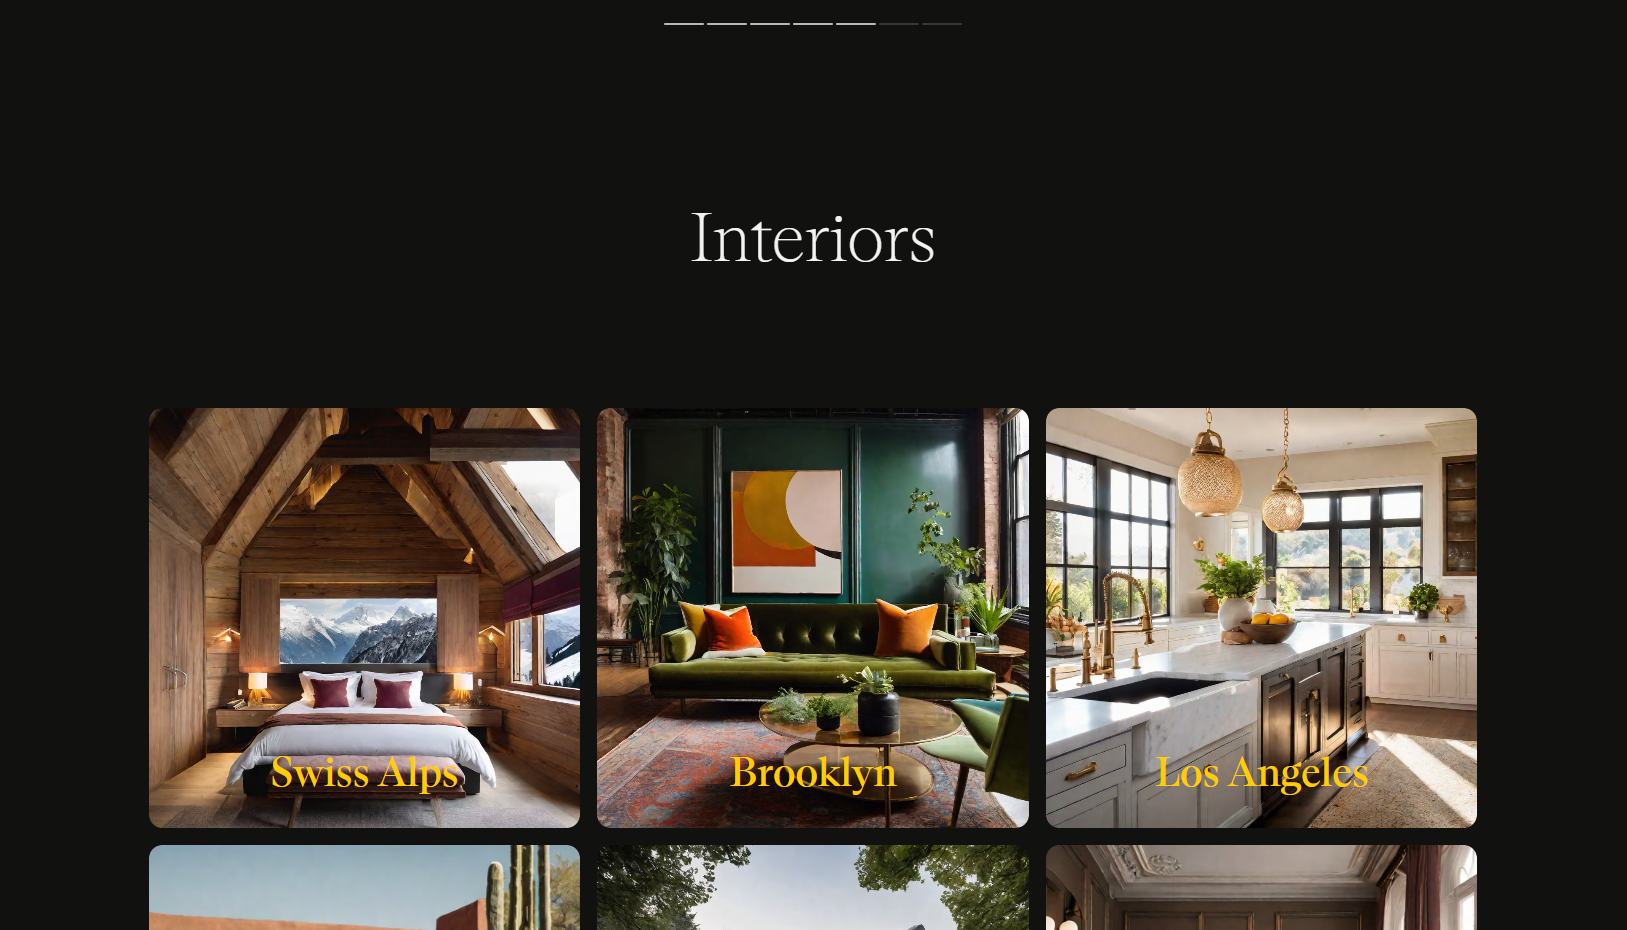 Interior Design Portfolio - Previous Work Collage